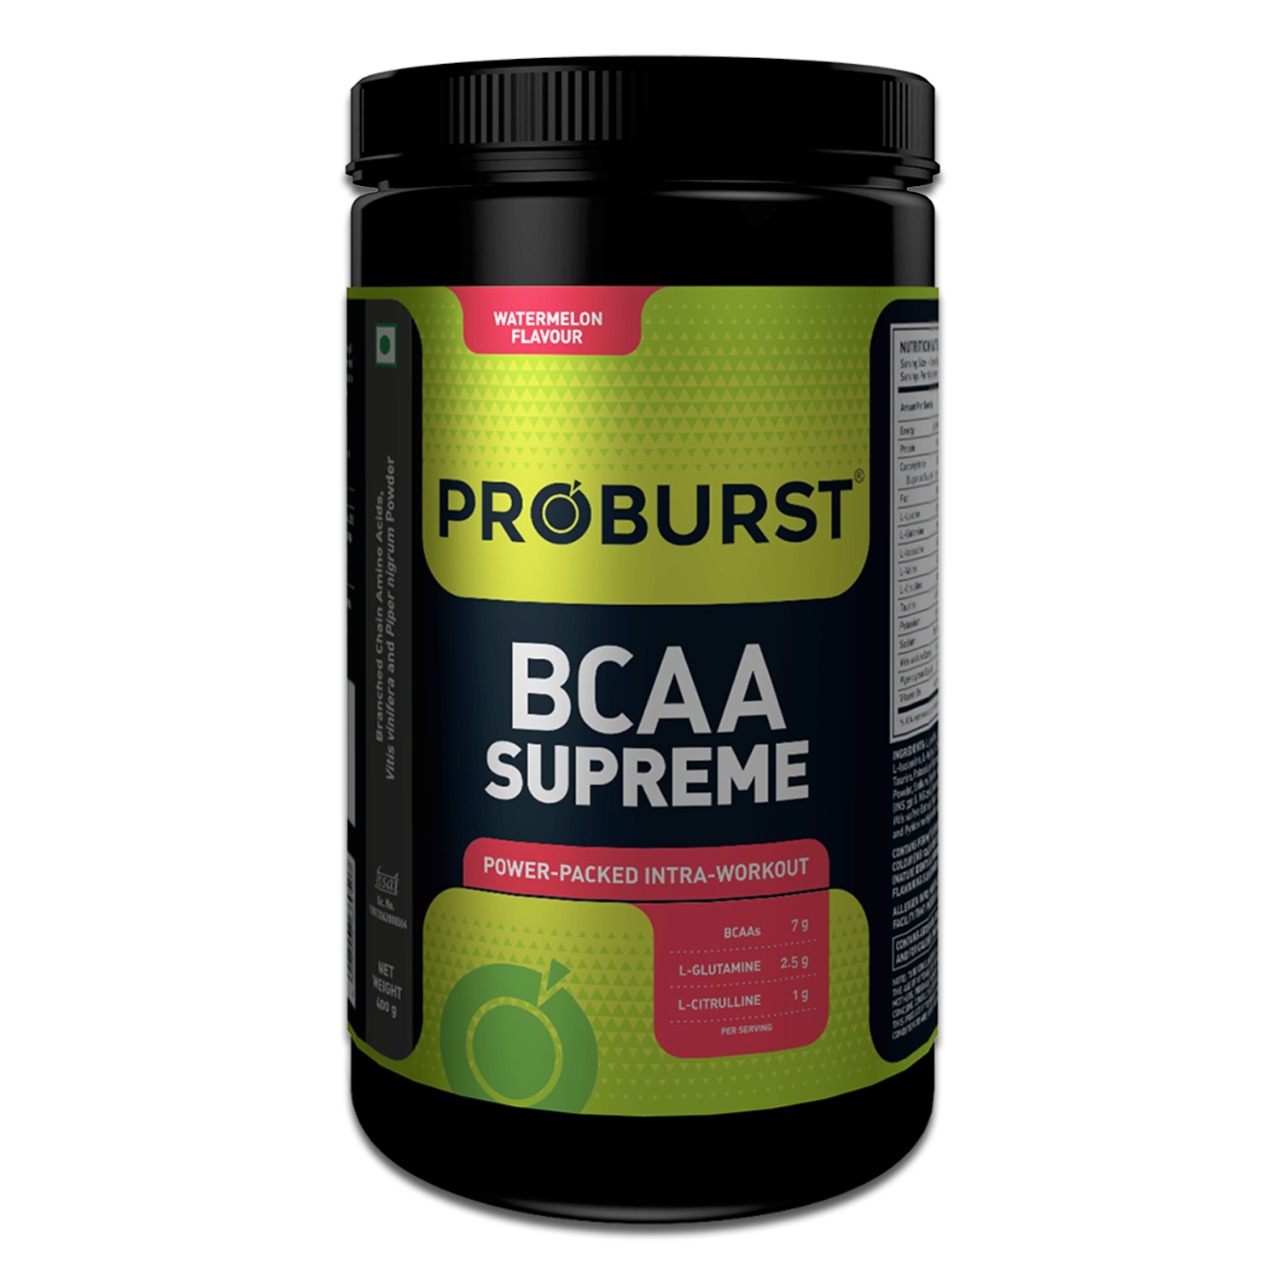 PROBURST BCAA Supreme supplement